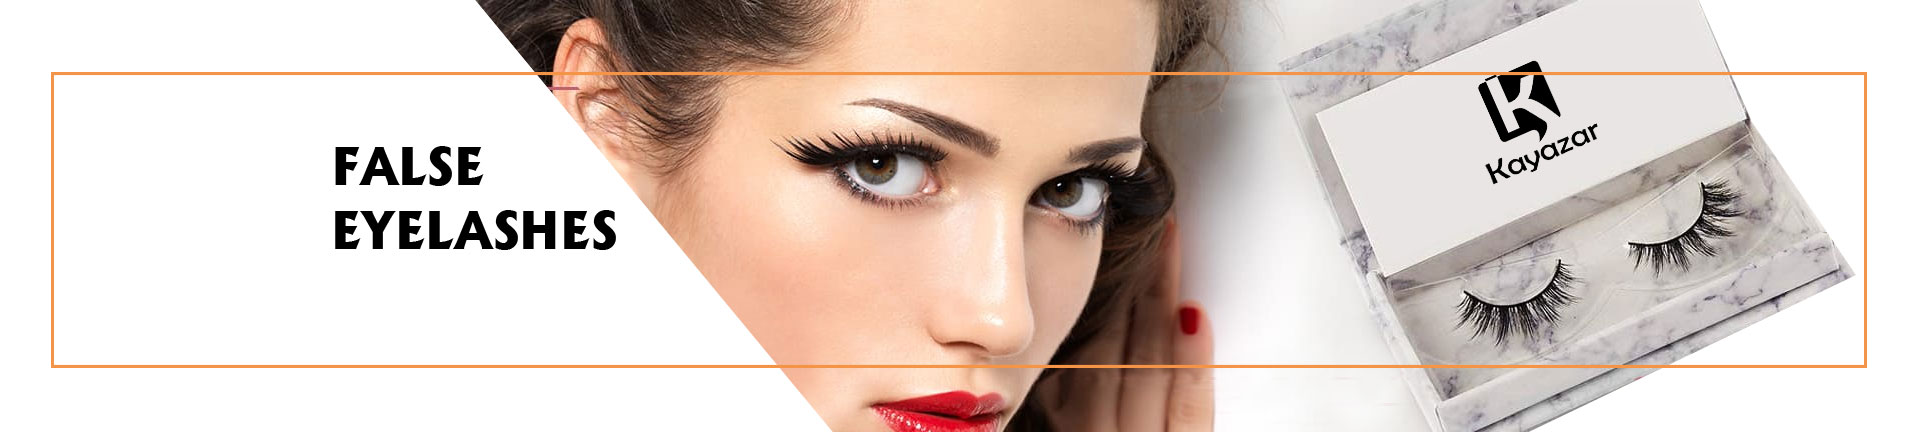 Buy False Eyelashes For Women Online @ Best Price in Pakistan